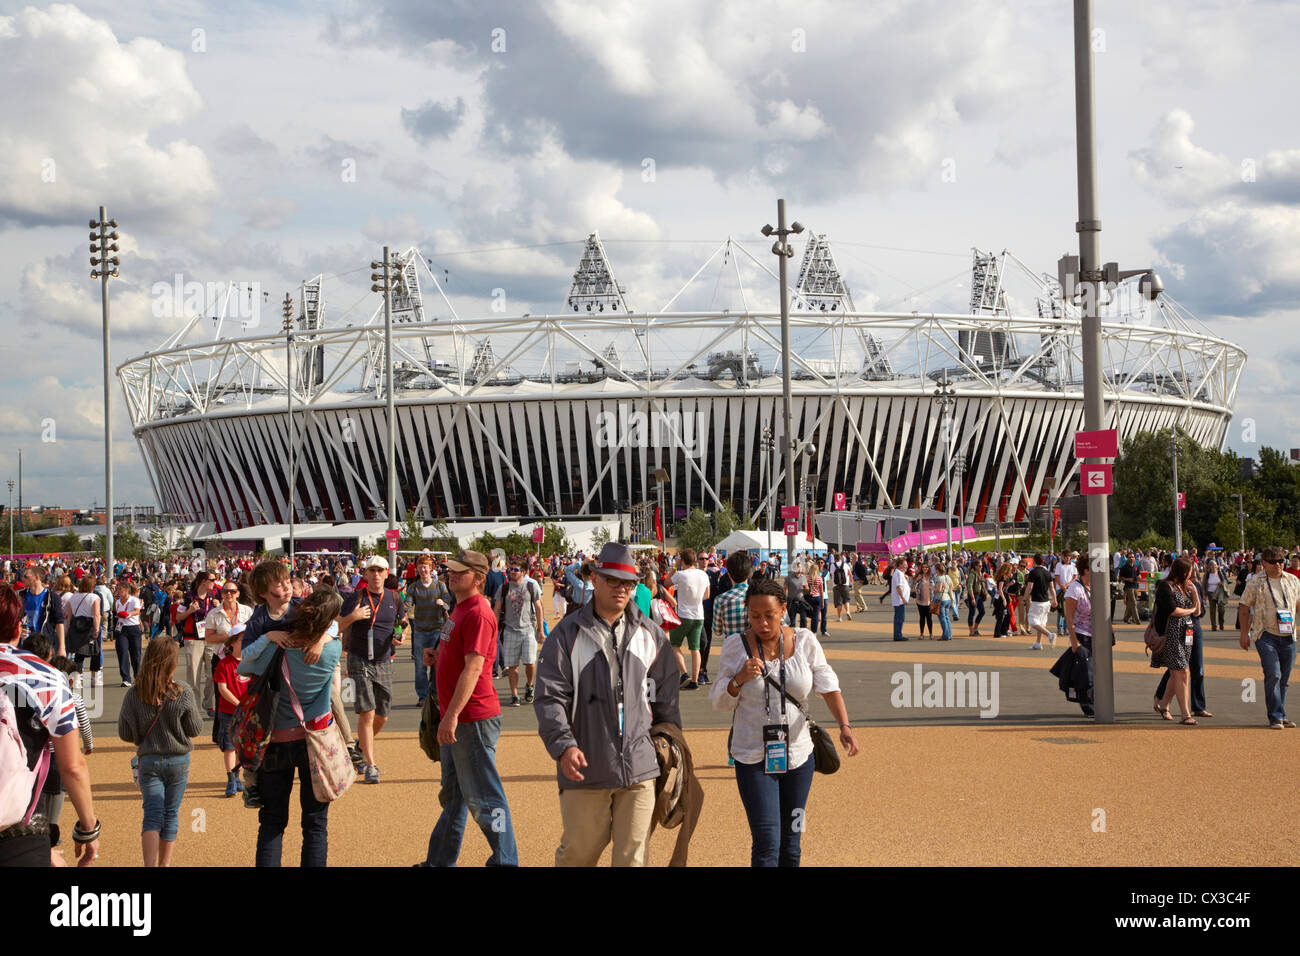 Lo Stadio Olimpico di Londra 2012, Londra, Regno Unito. Architetto: popolato, 2012. Vista complessiva durante i giochi con gli spettatori in per Foto Stock